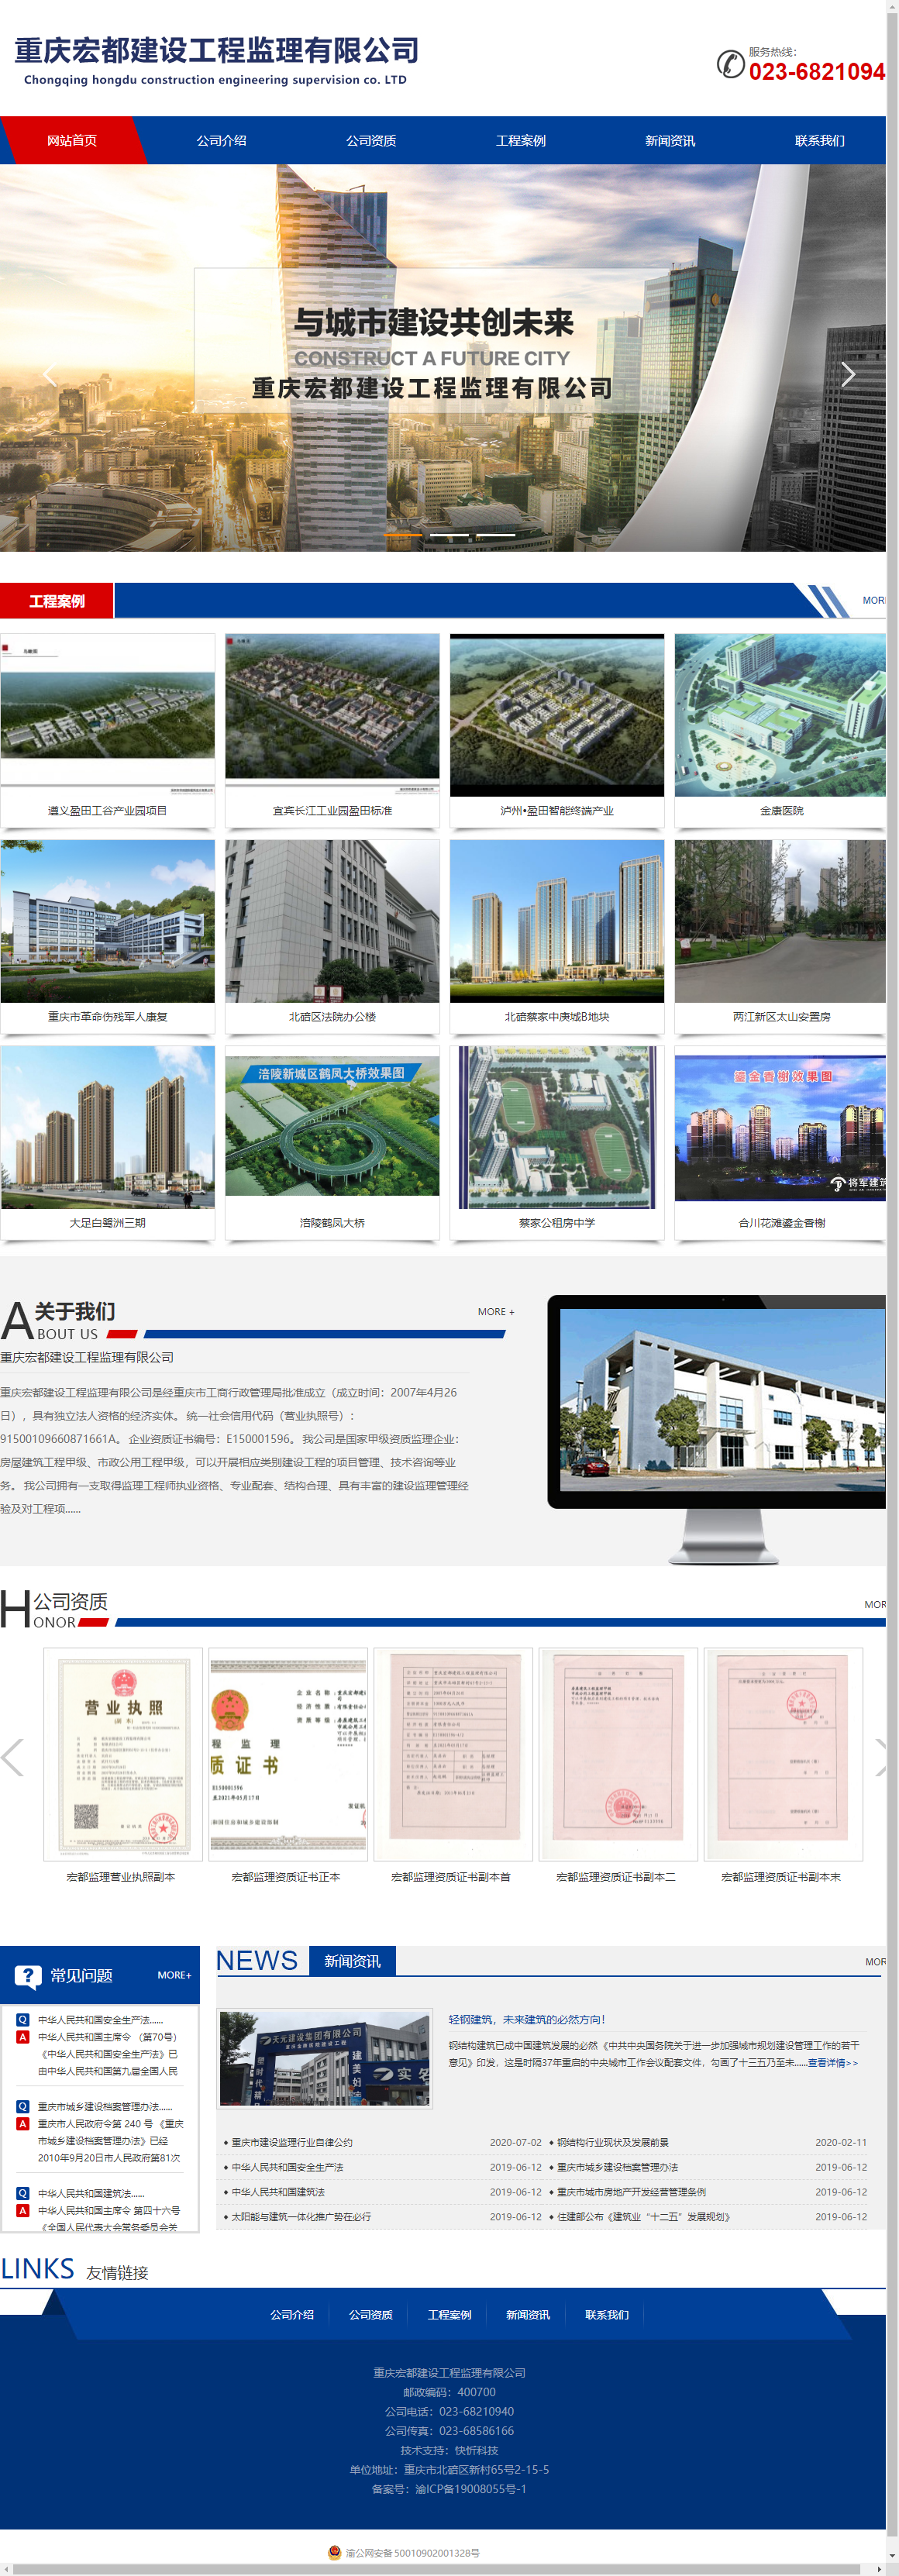 重庆宏都建设工程监理有限公司网站案例